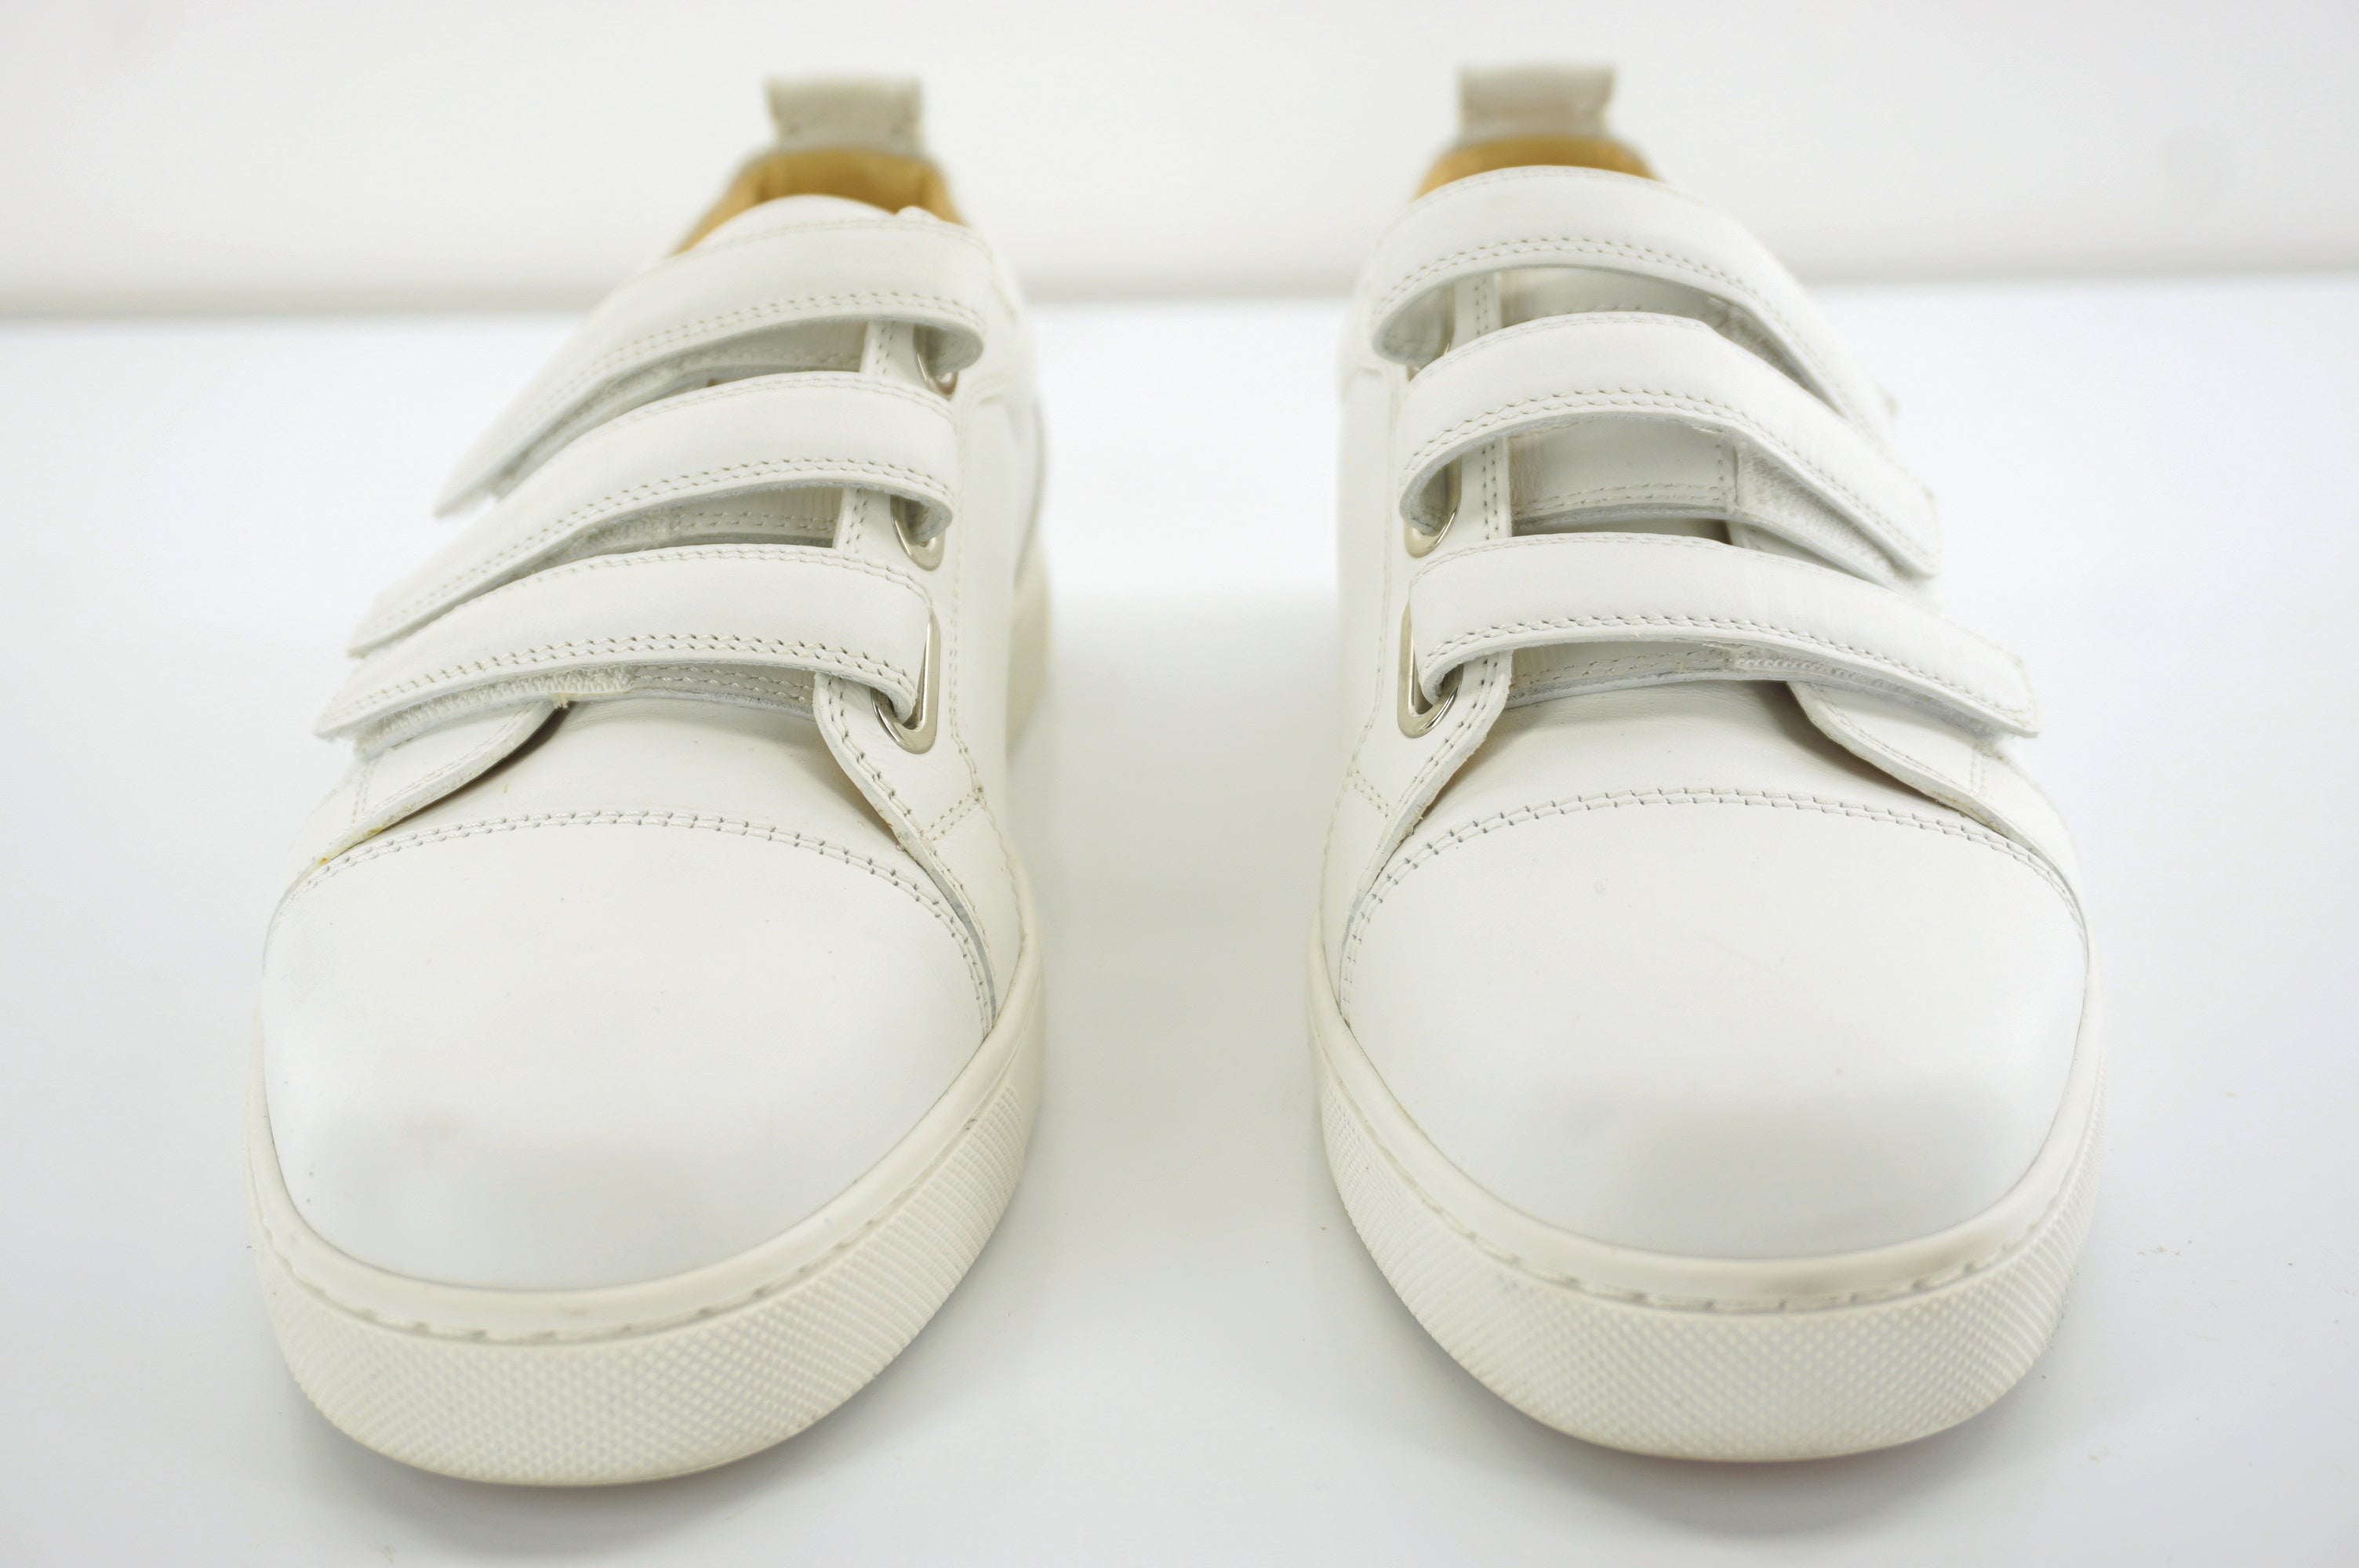 Christian Louboutin Kiddo Donna Three Strap Leather Sneakers SZ 37 White $745